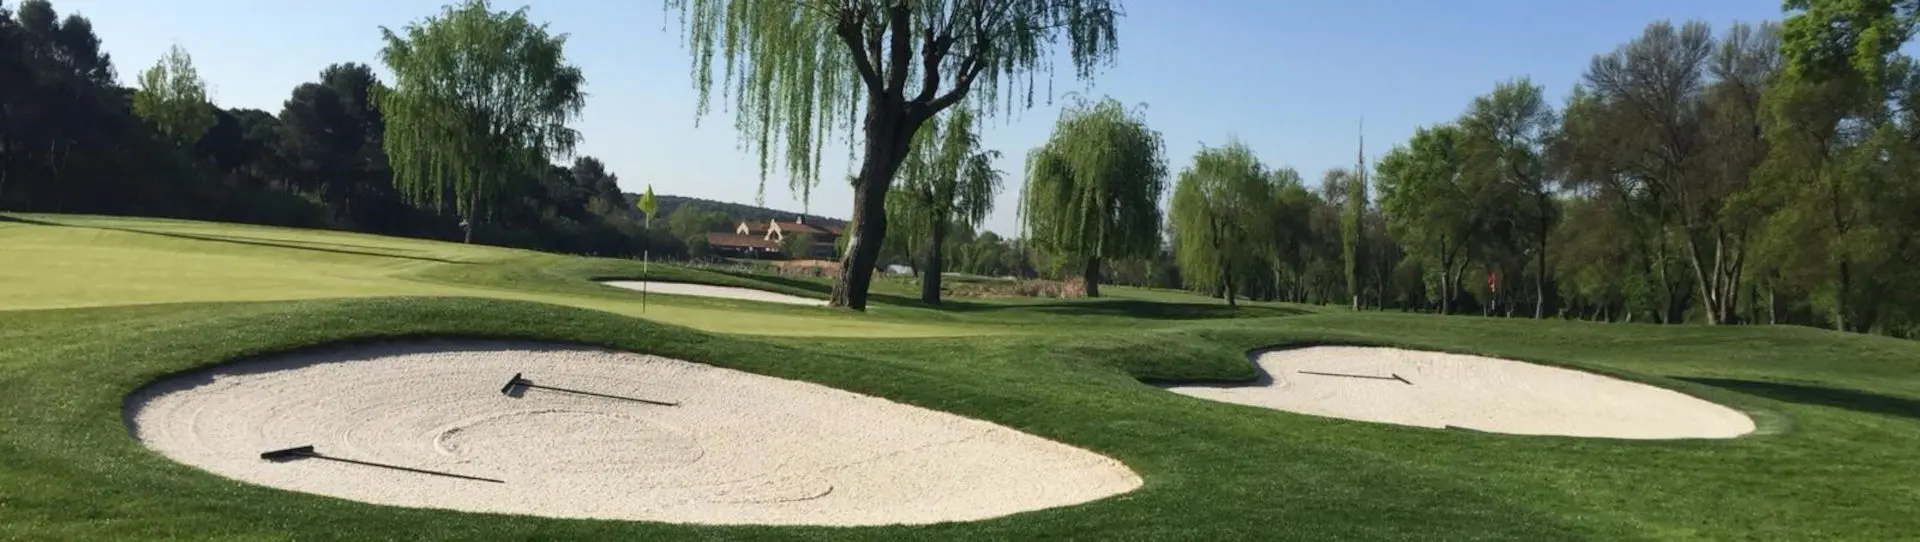 Spain golf courses - Lomas Bosque Golf Course - Photo 2